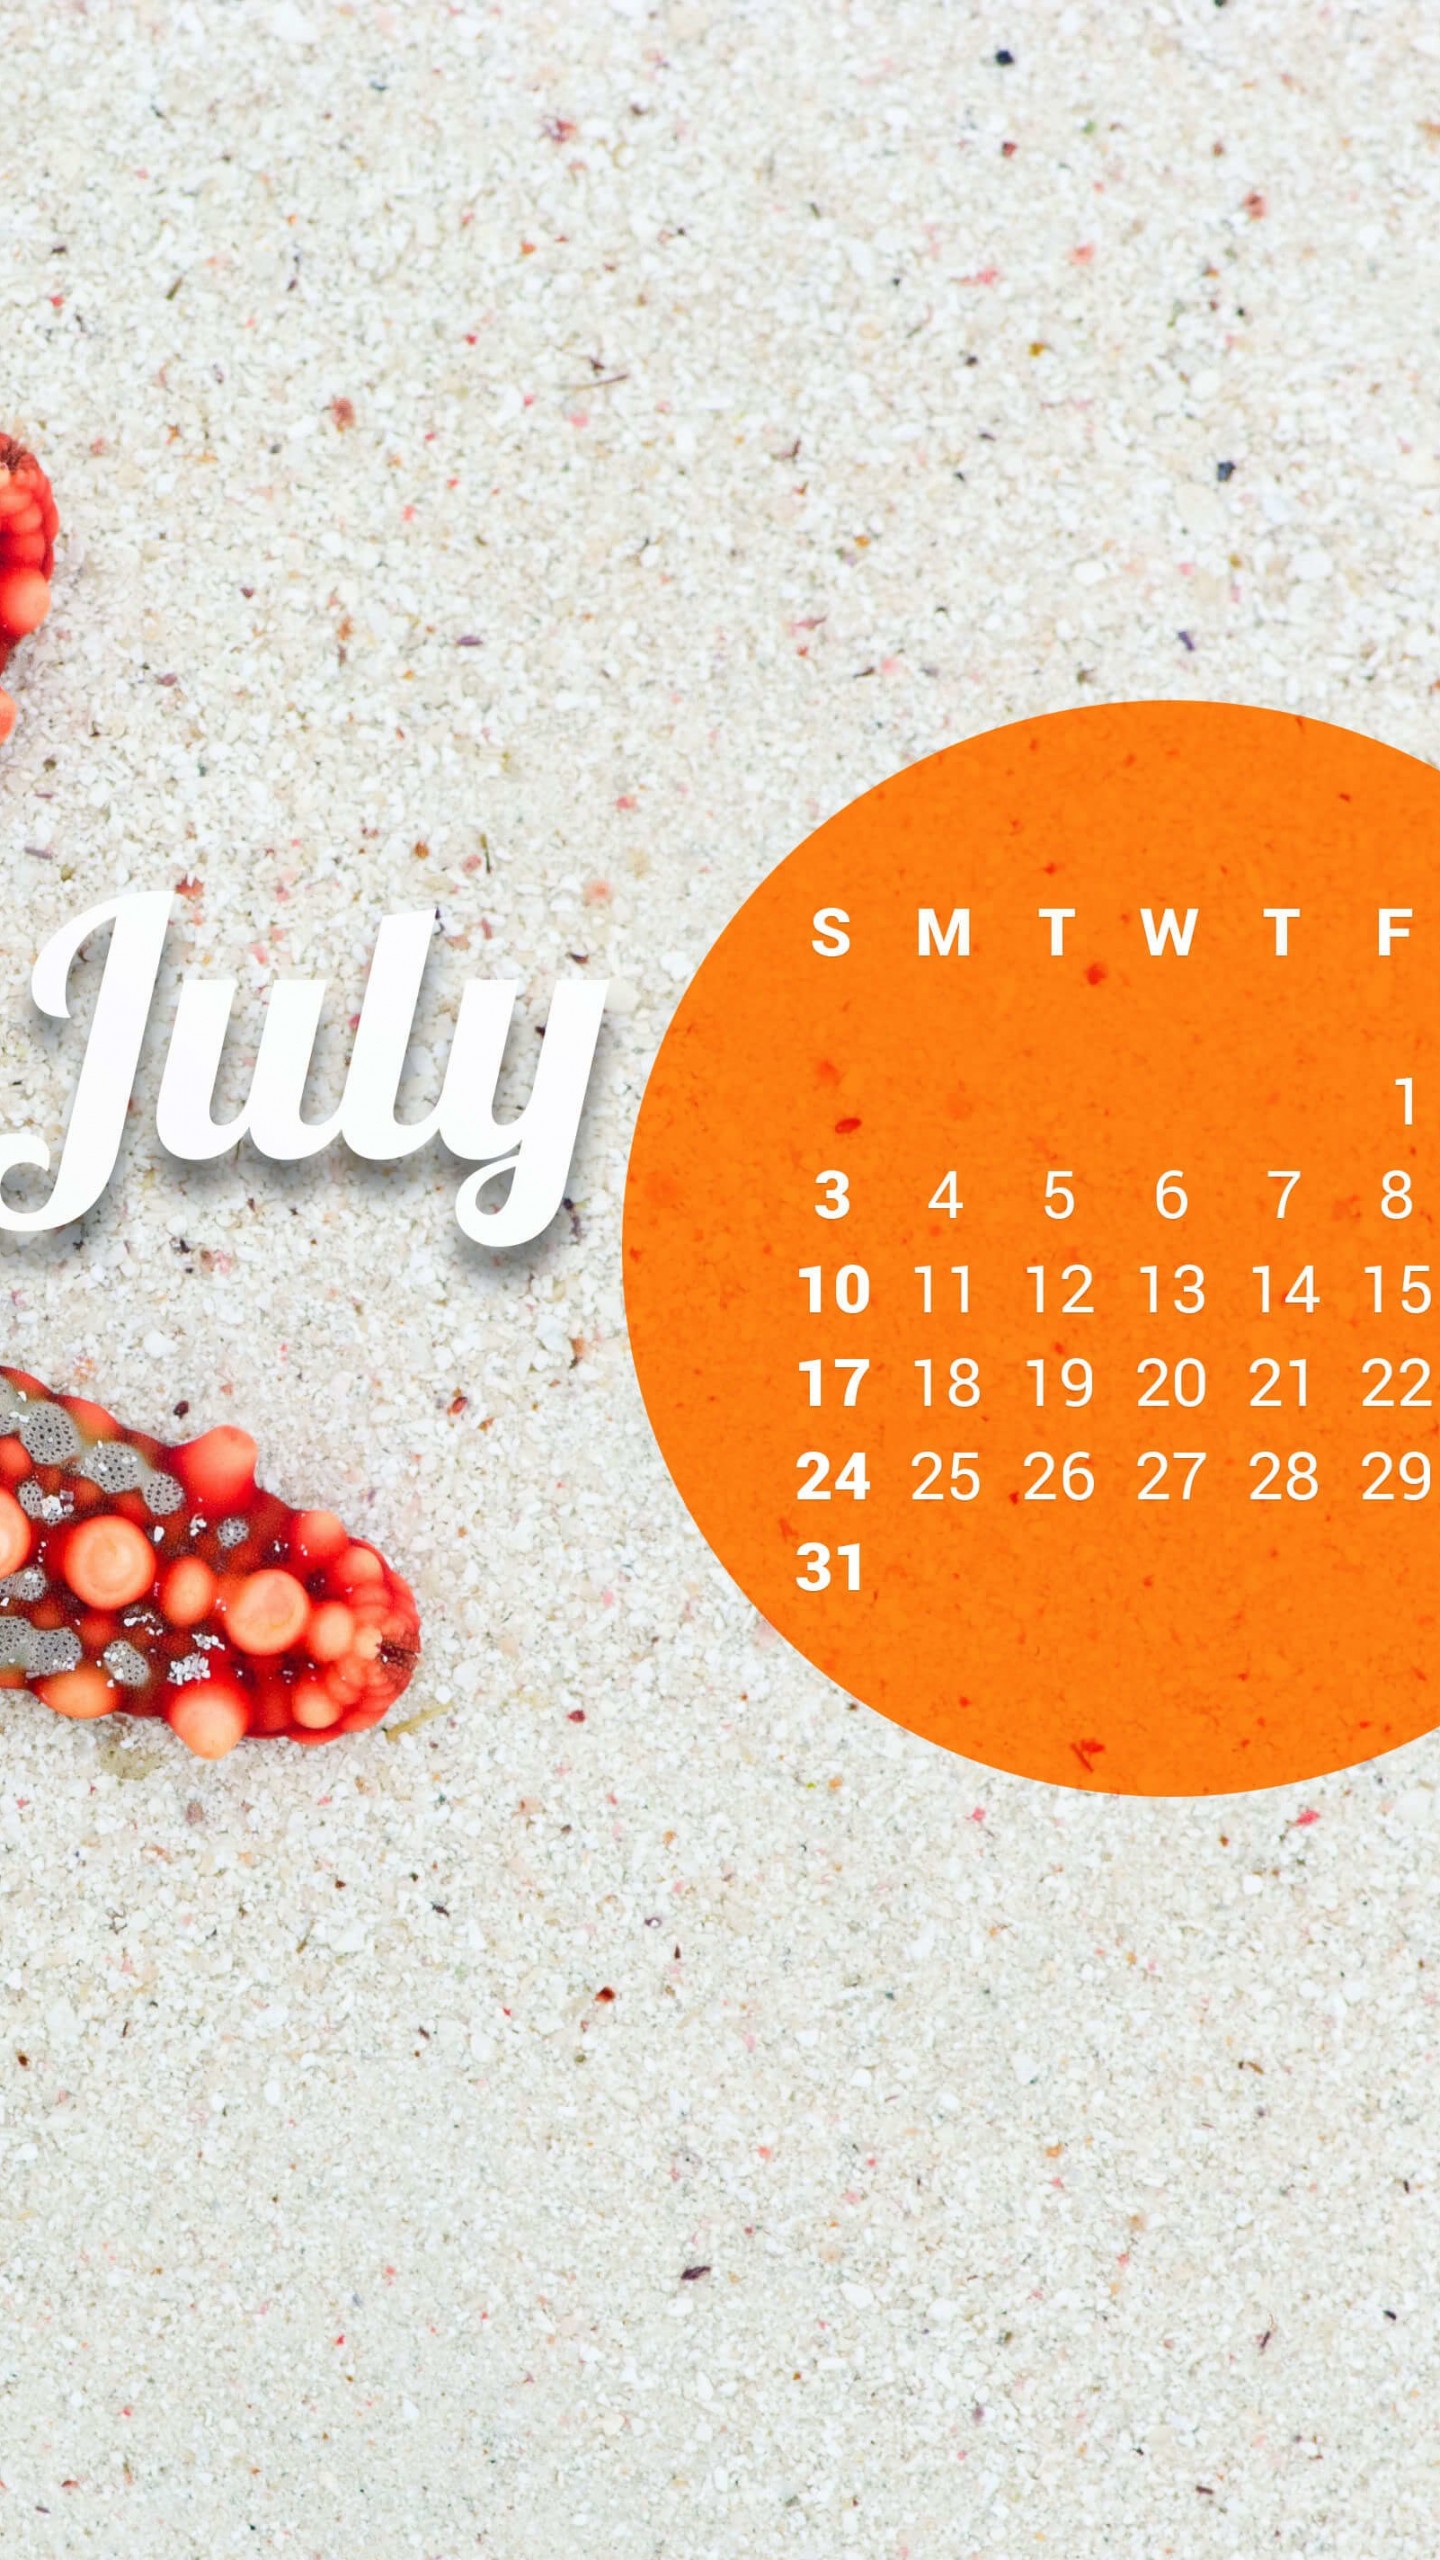 July 2016 Calendar Wallpaper for LG G3